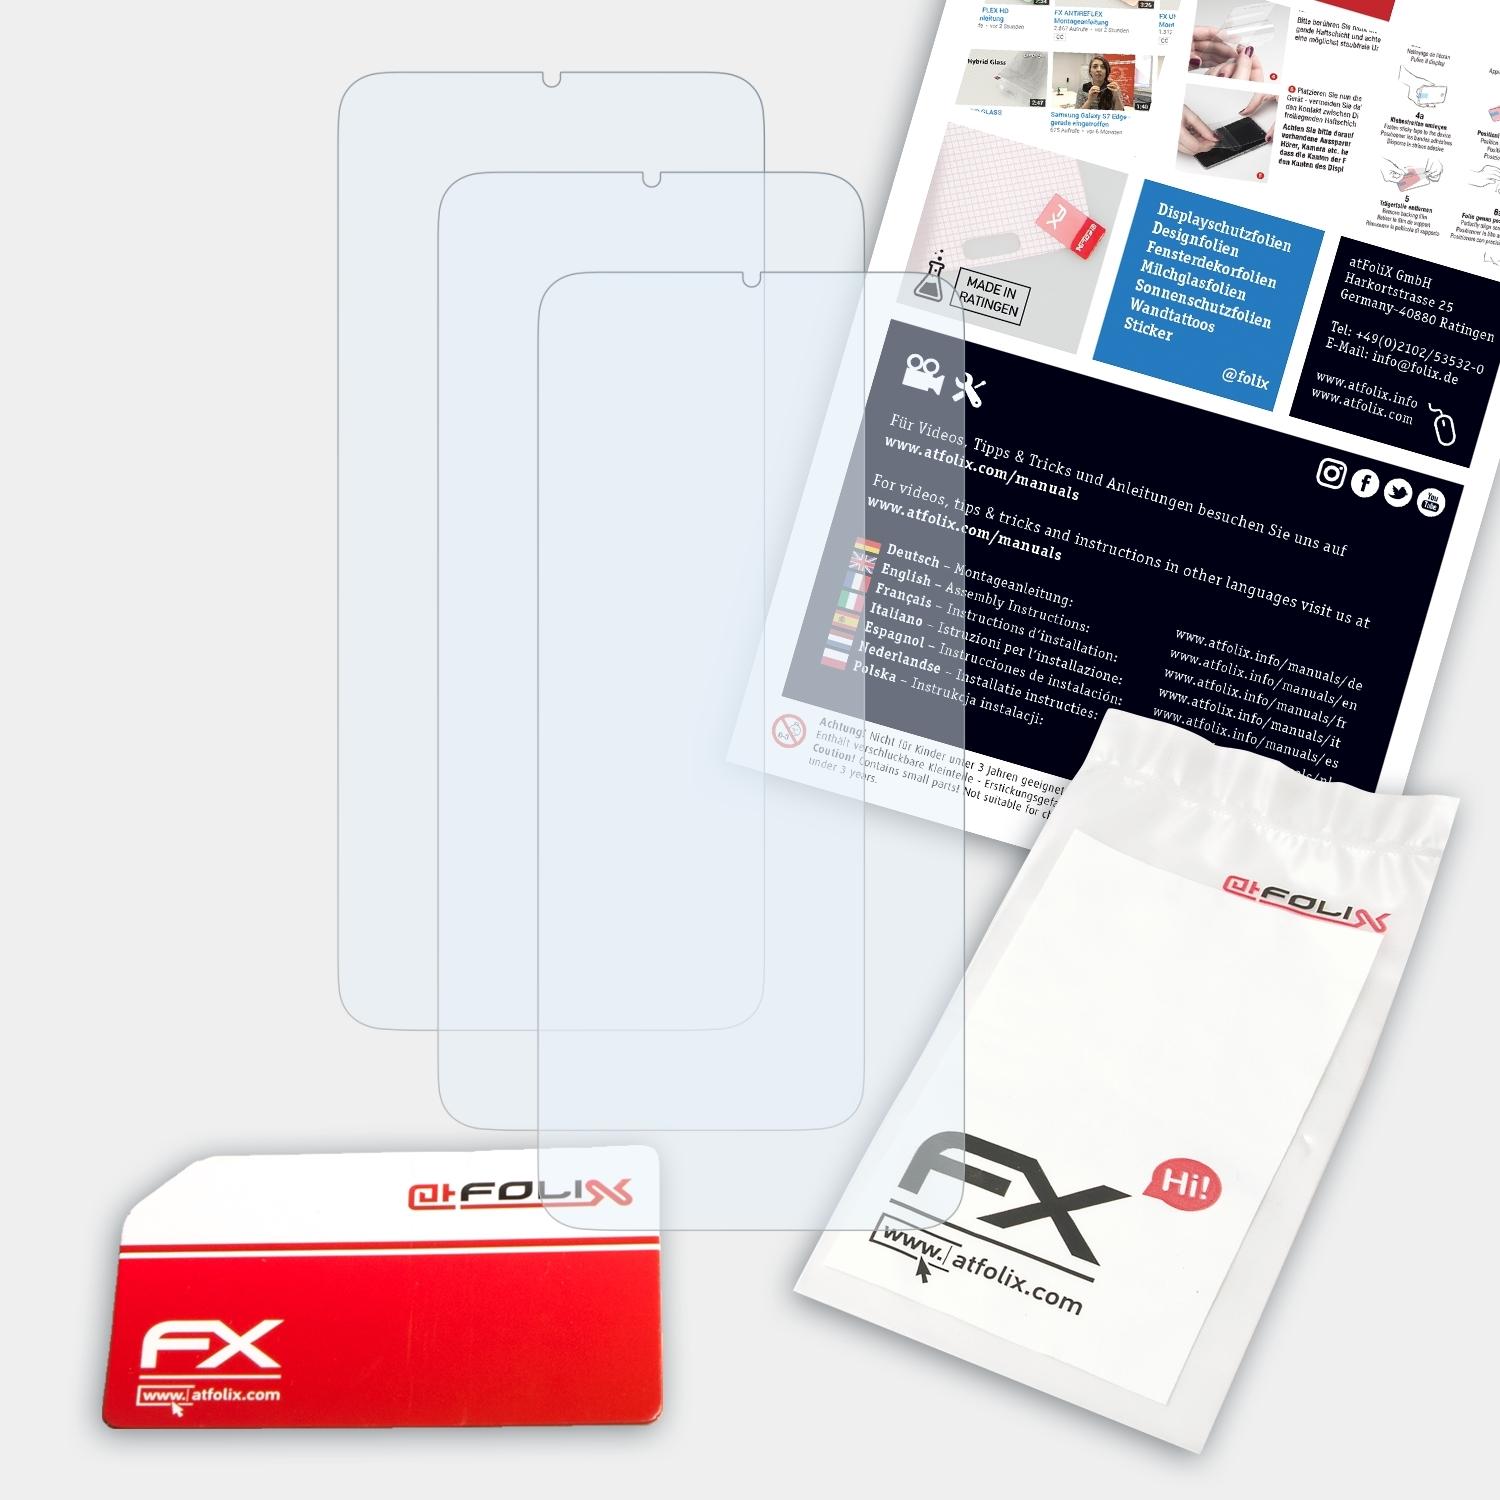 9T) FX-Clear Xiaomi Redmi ATFOLIX Displayschutz(für 3x